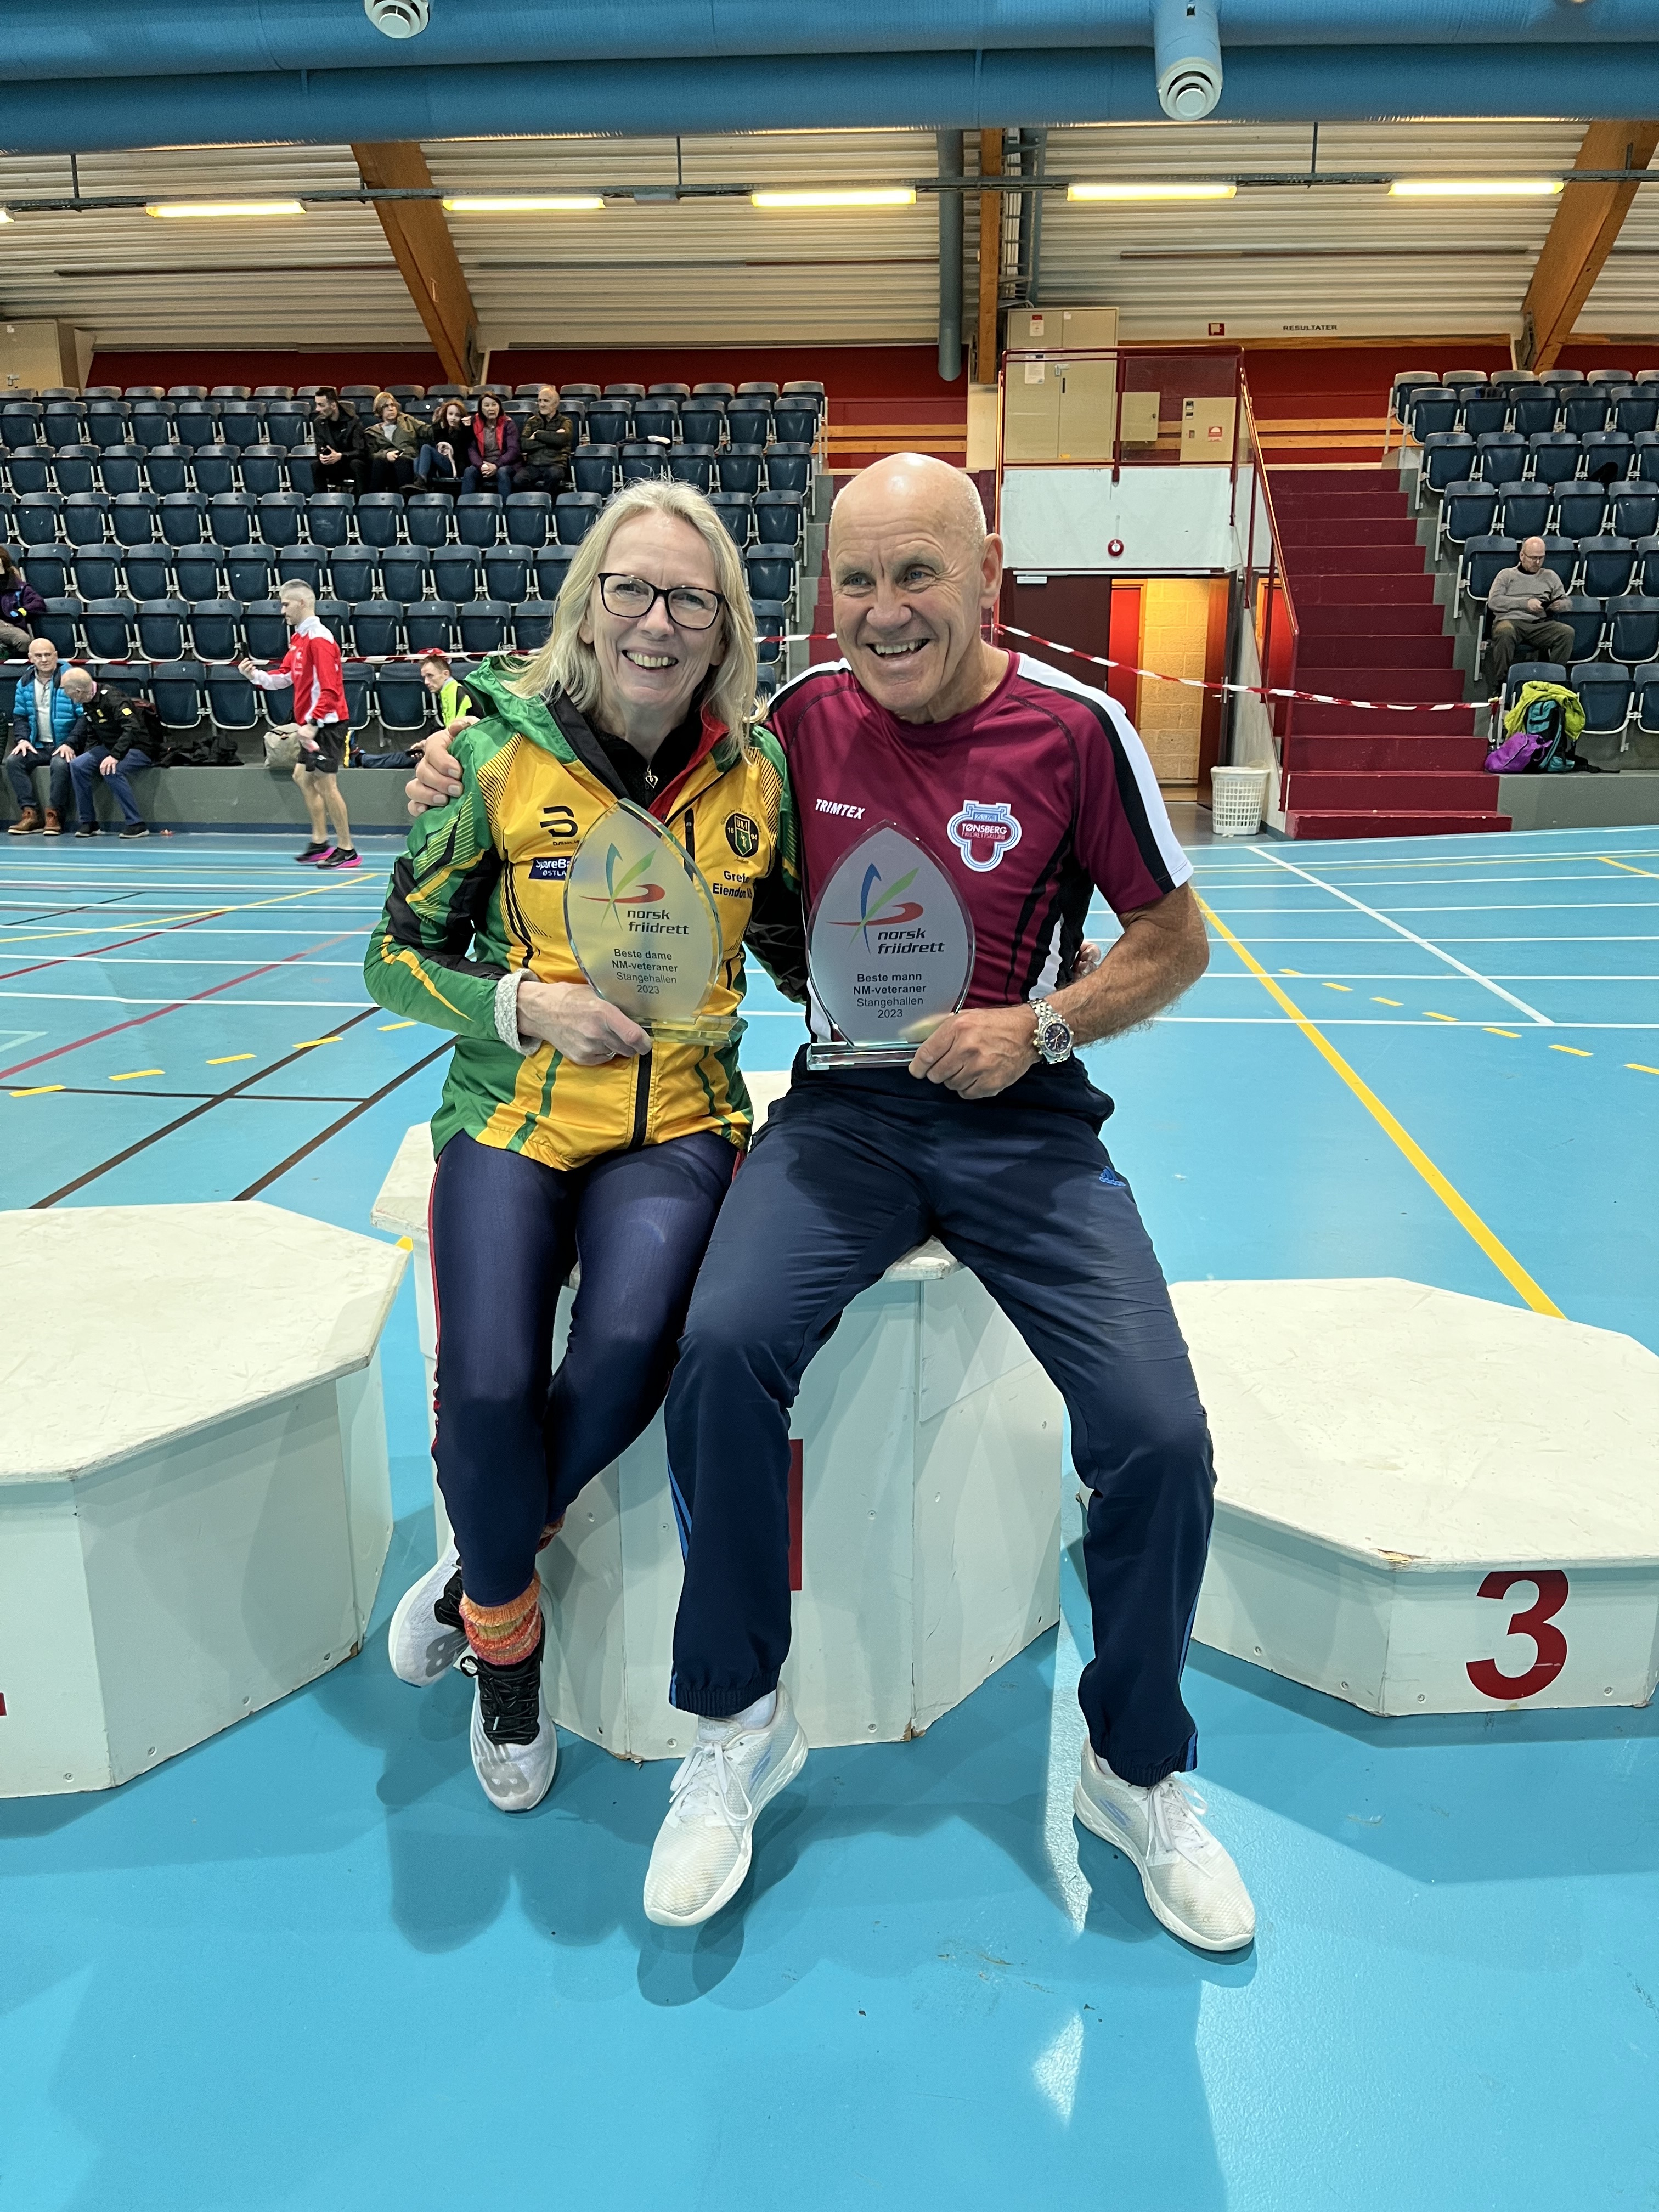 Flere norske rekorder og bestemannspremier til Tudem og Sundheim